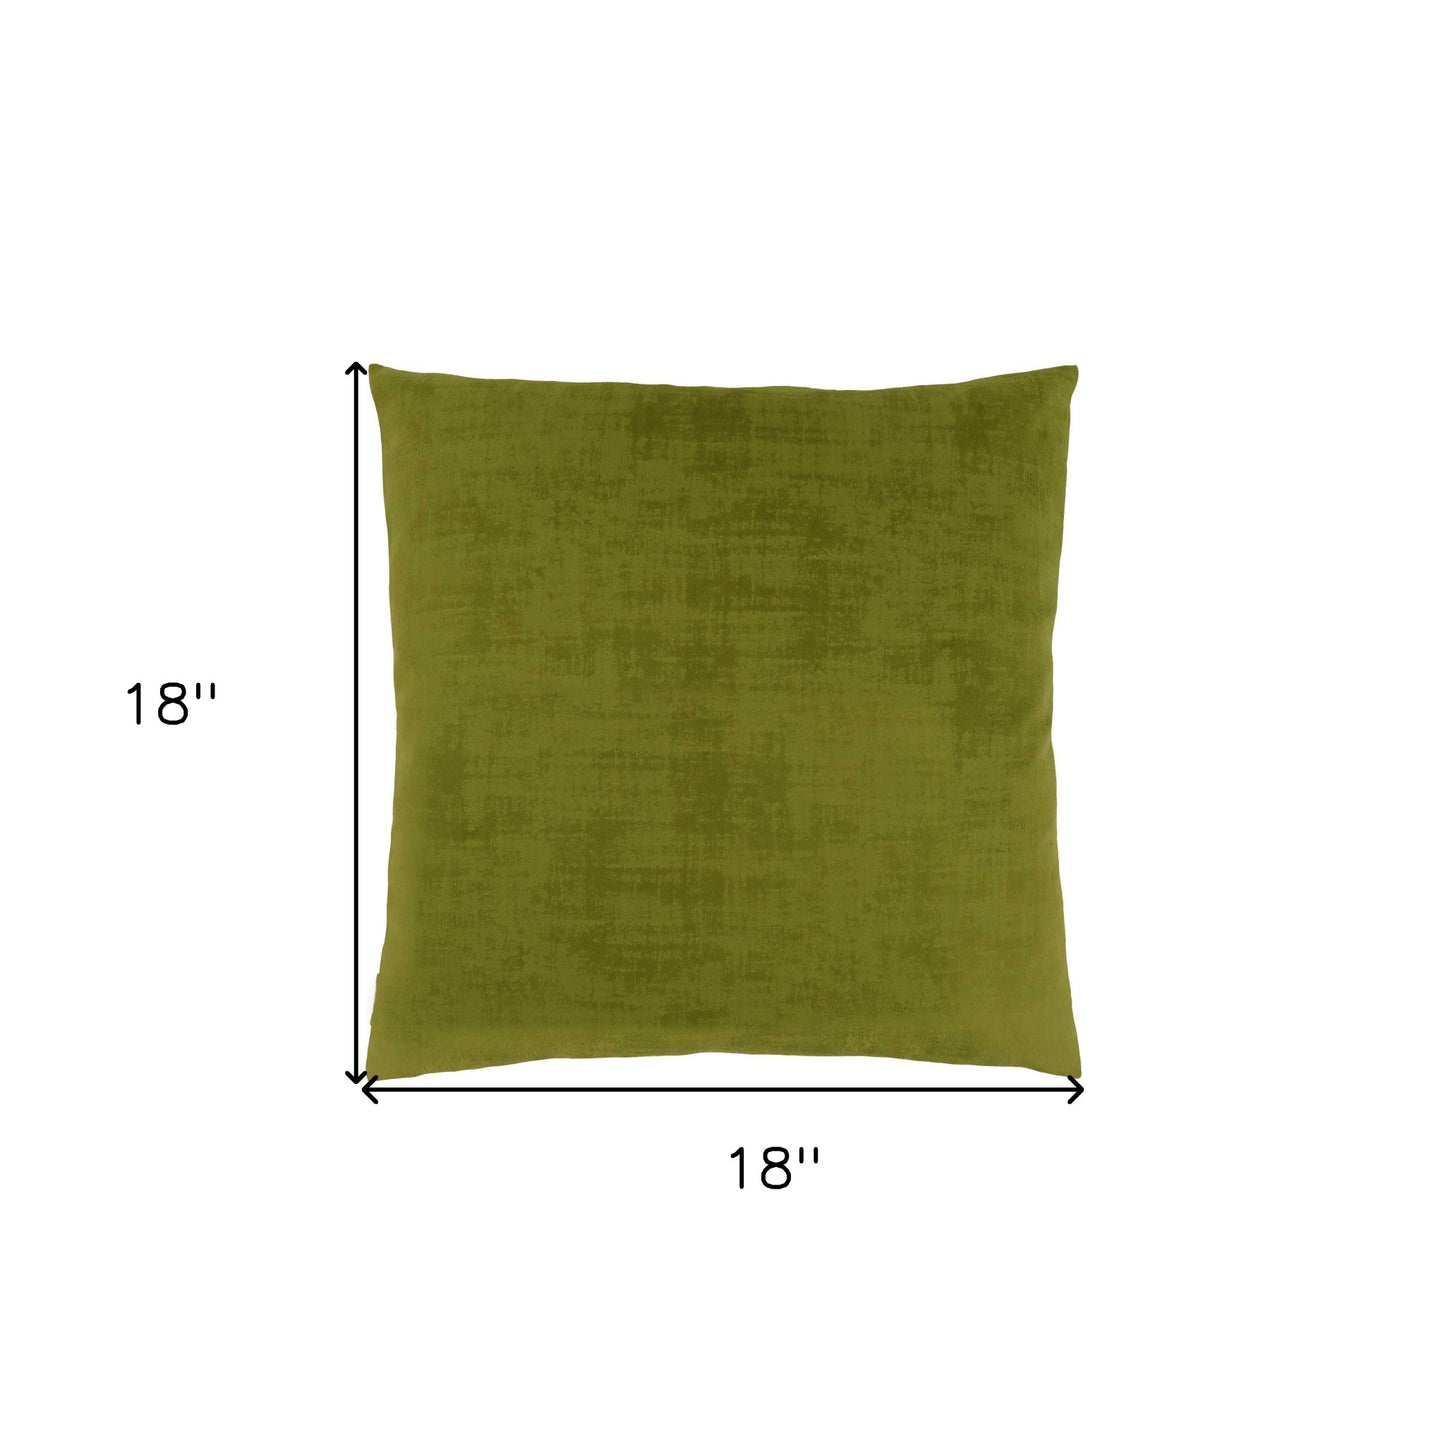 18" X 18" Lime Green Brushed Velvet Polyester Zippered Pillow